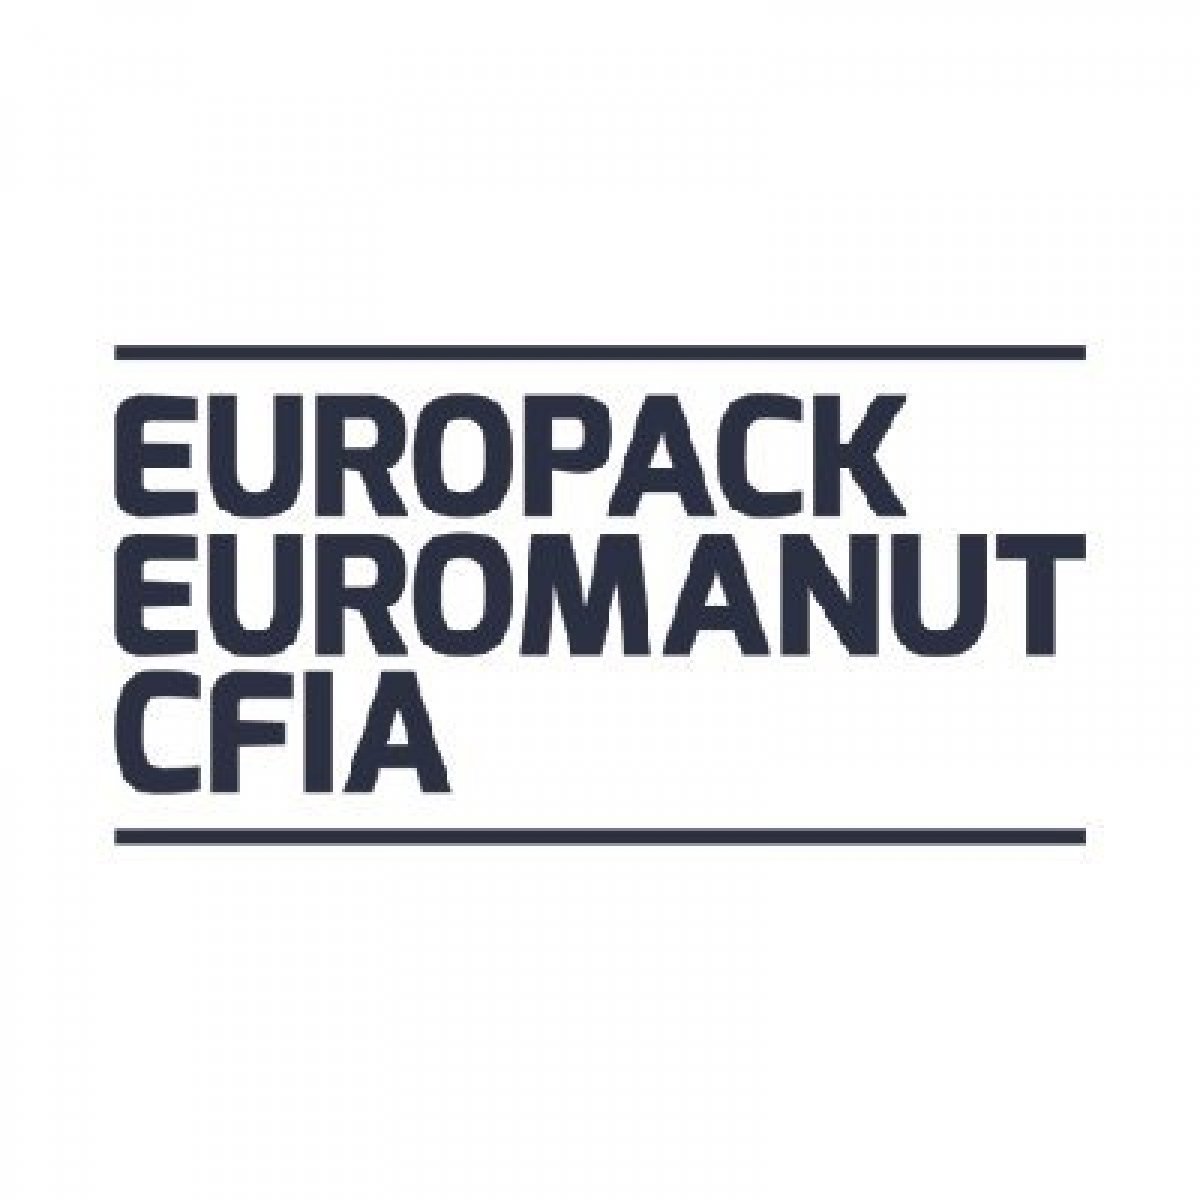 Europack Euromanut CFIA - Le salon de la manutention, de l'emballage et process